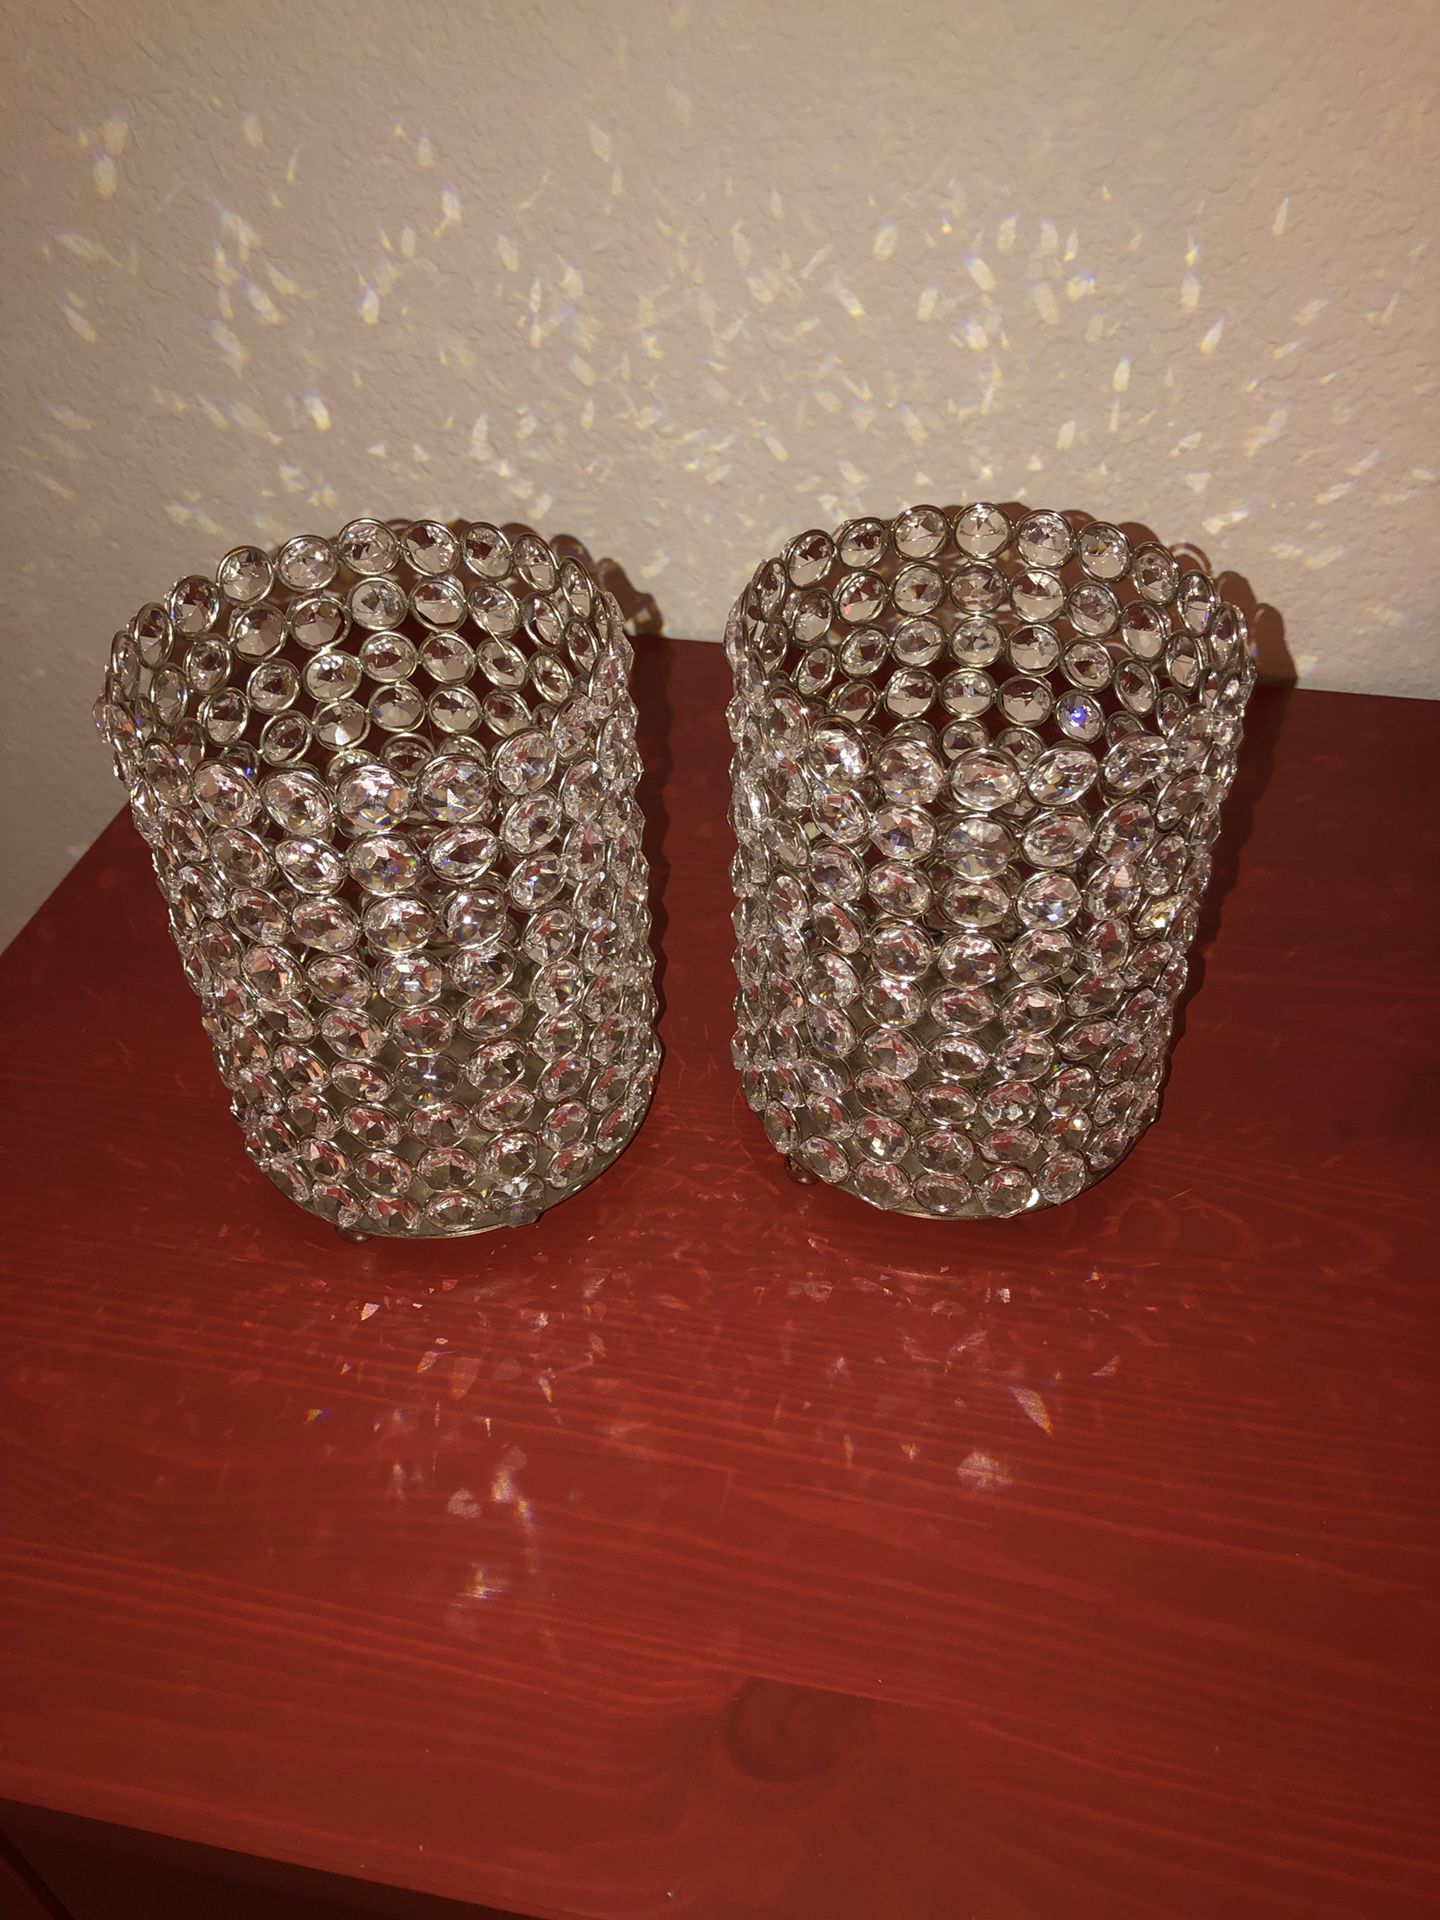 Crystal vase, light, or candle holder